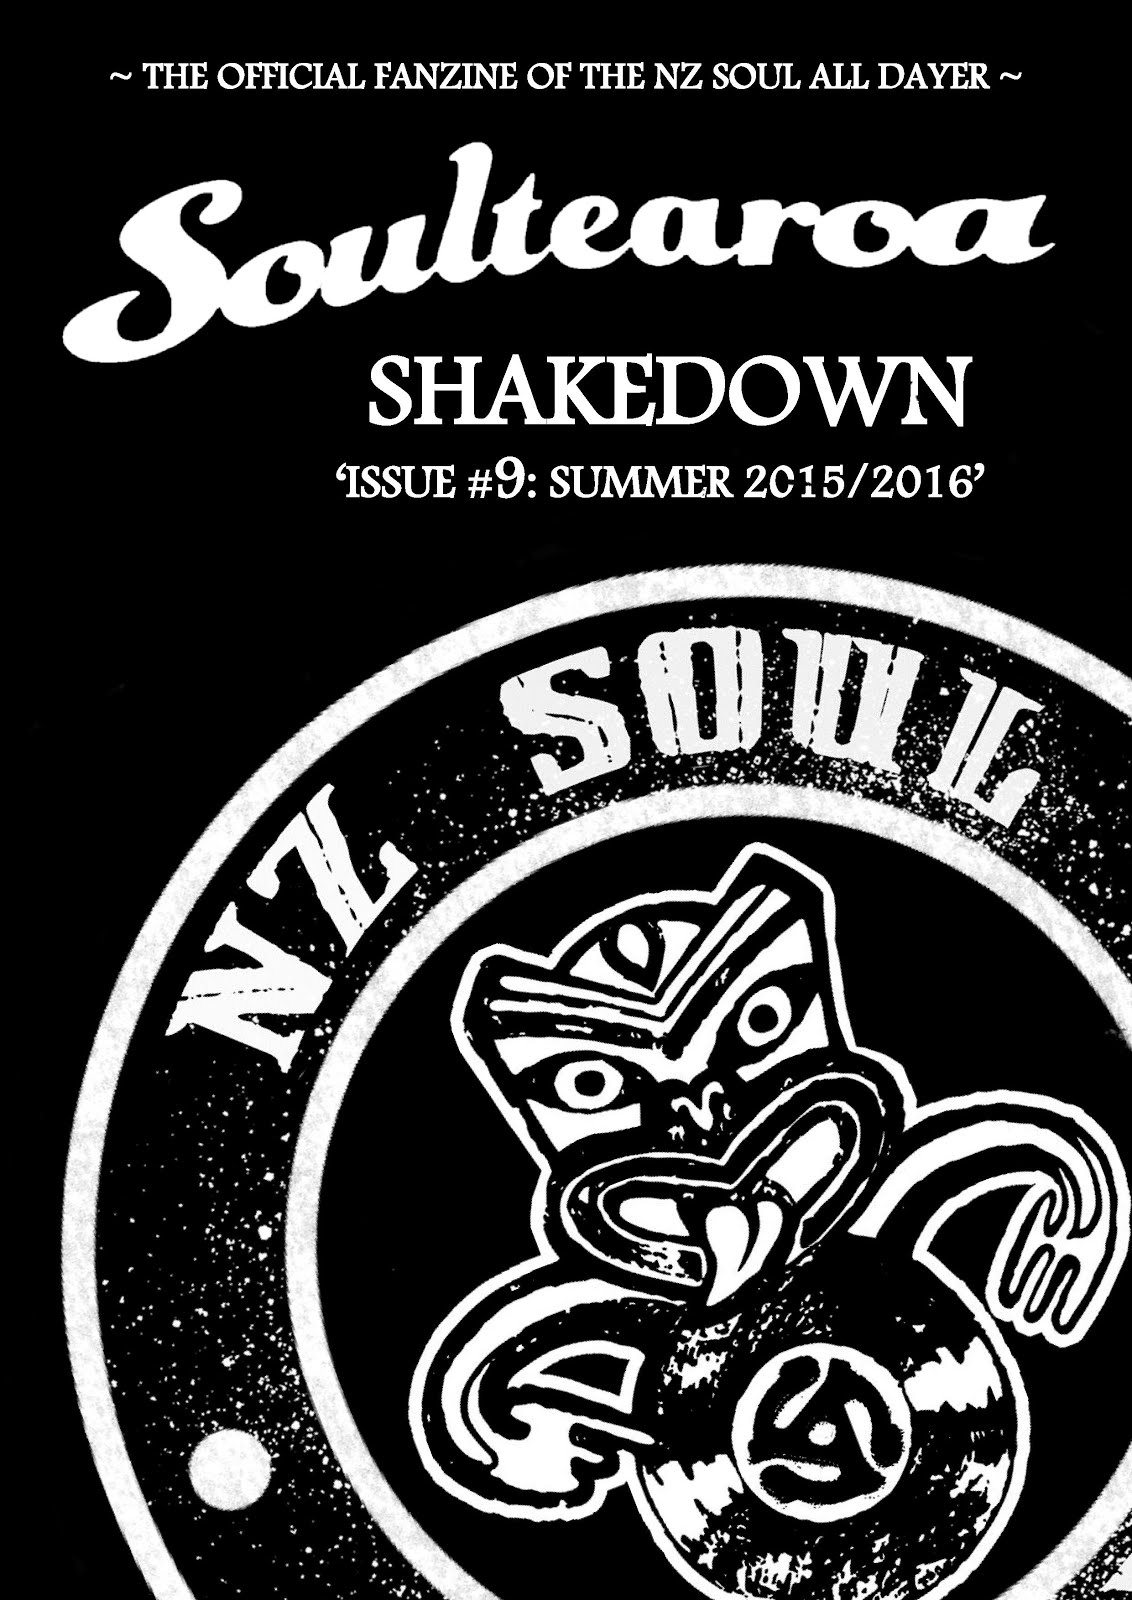 Soultearoa Shakedown fanzine